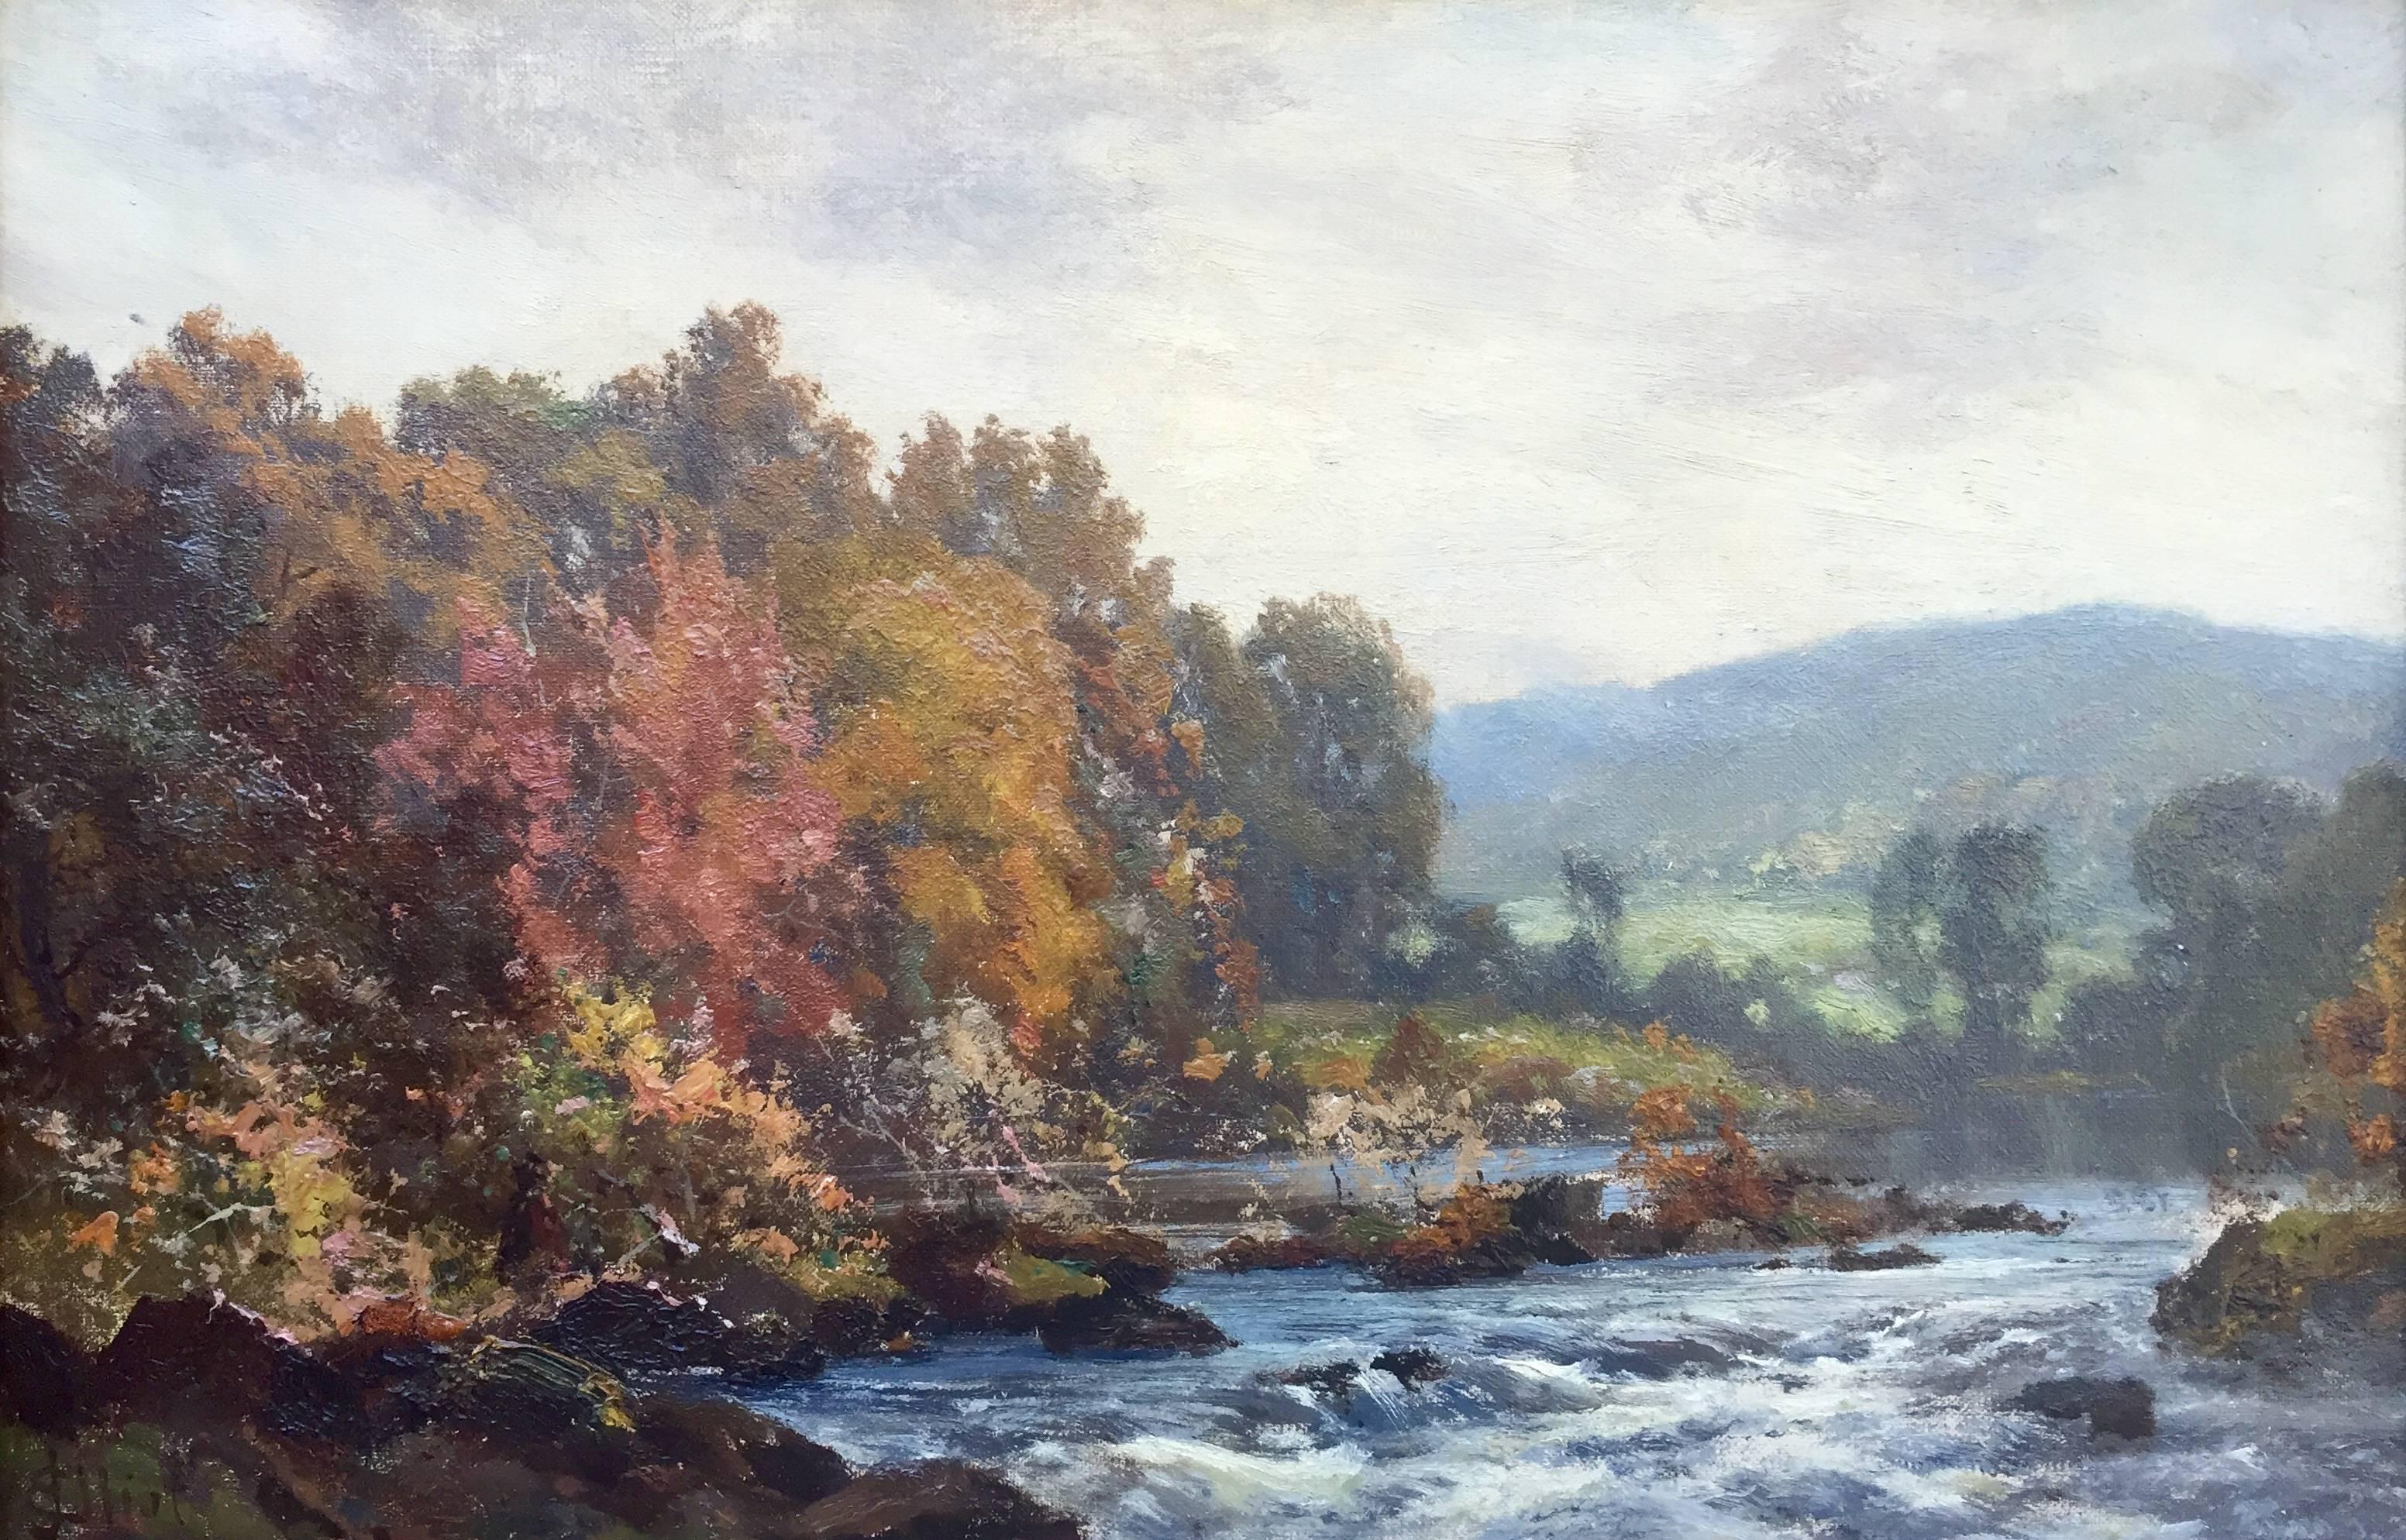 James Elliot Landscape Painting - "River Landscape"